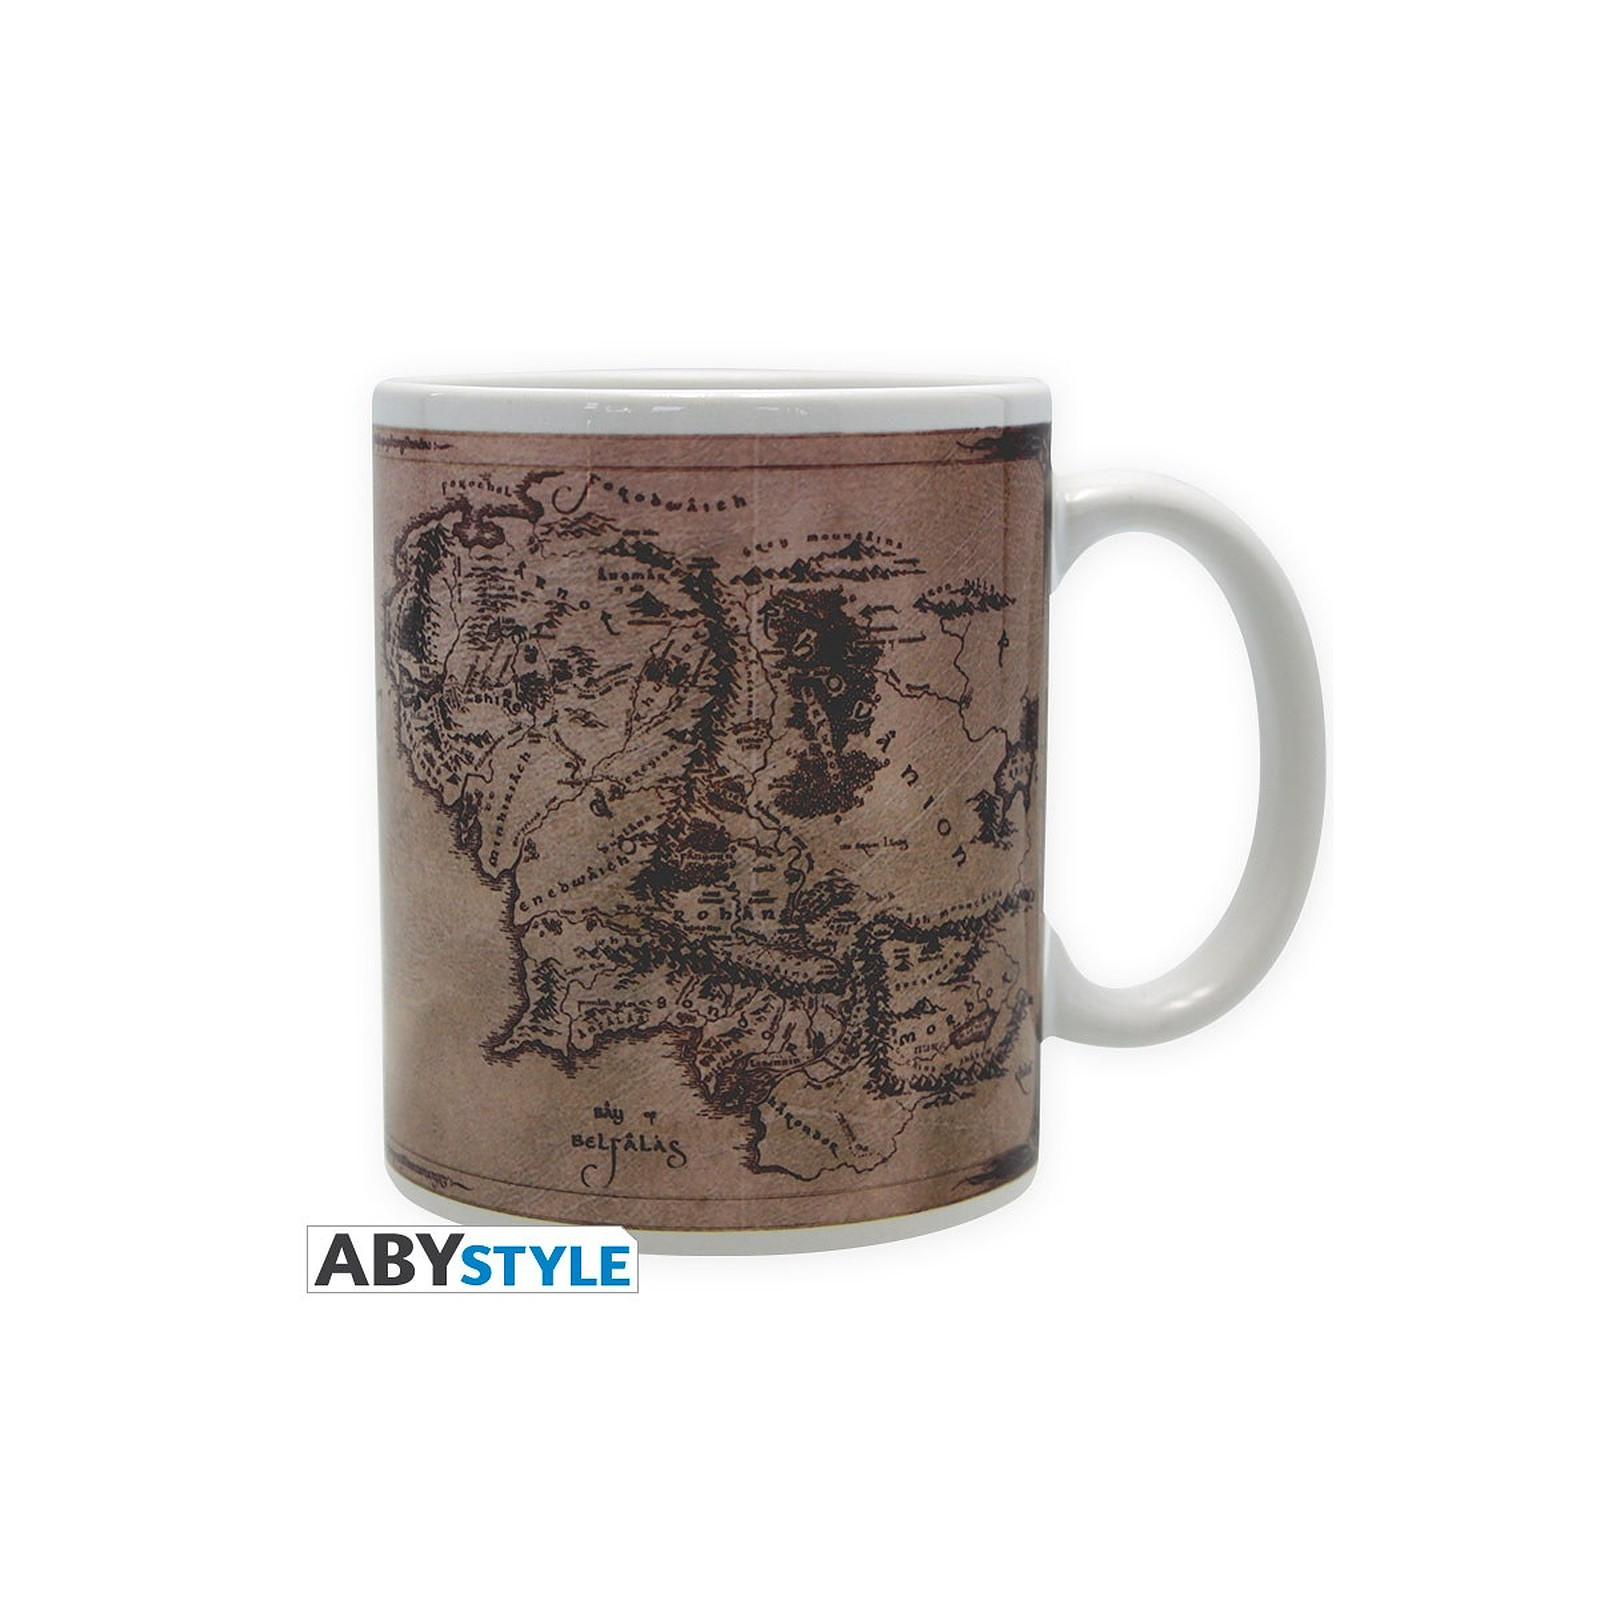 Le Seigneur des anneaux - Mug Carte - Mugs Abystyle